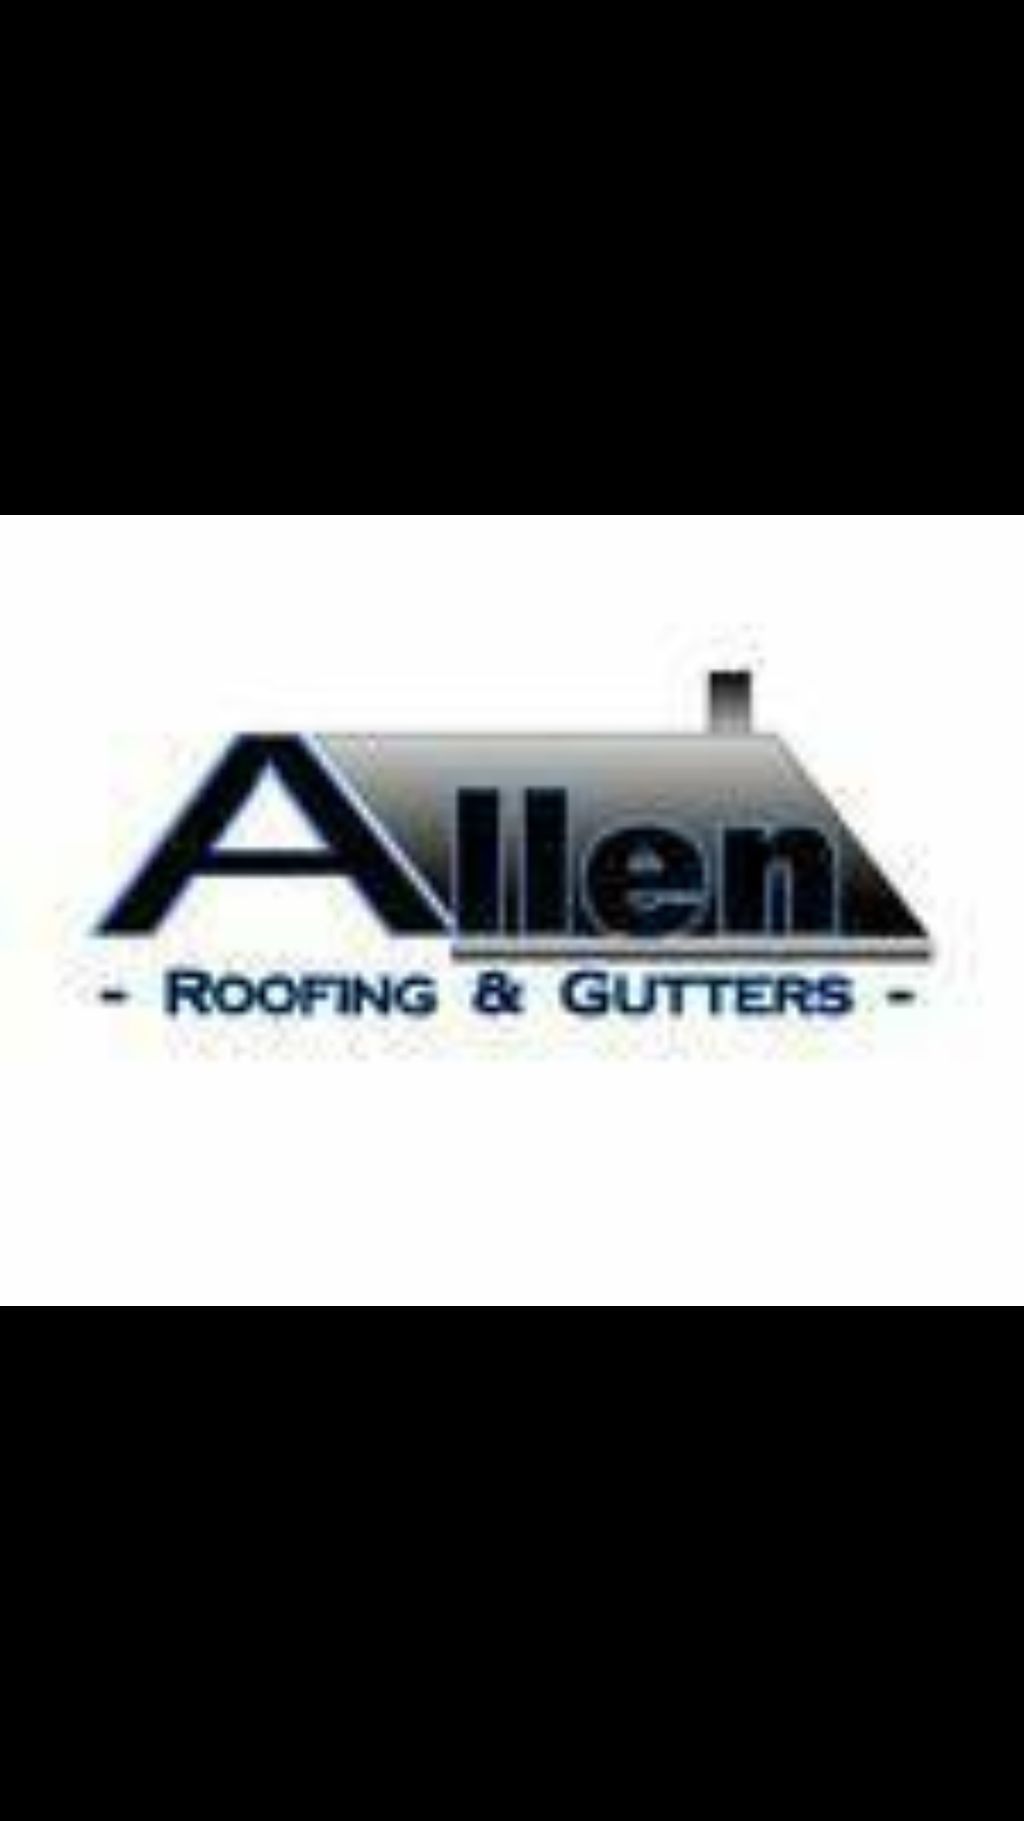 Allen Roofing & Gutters